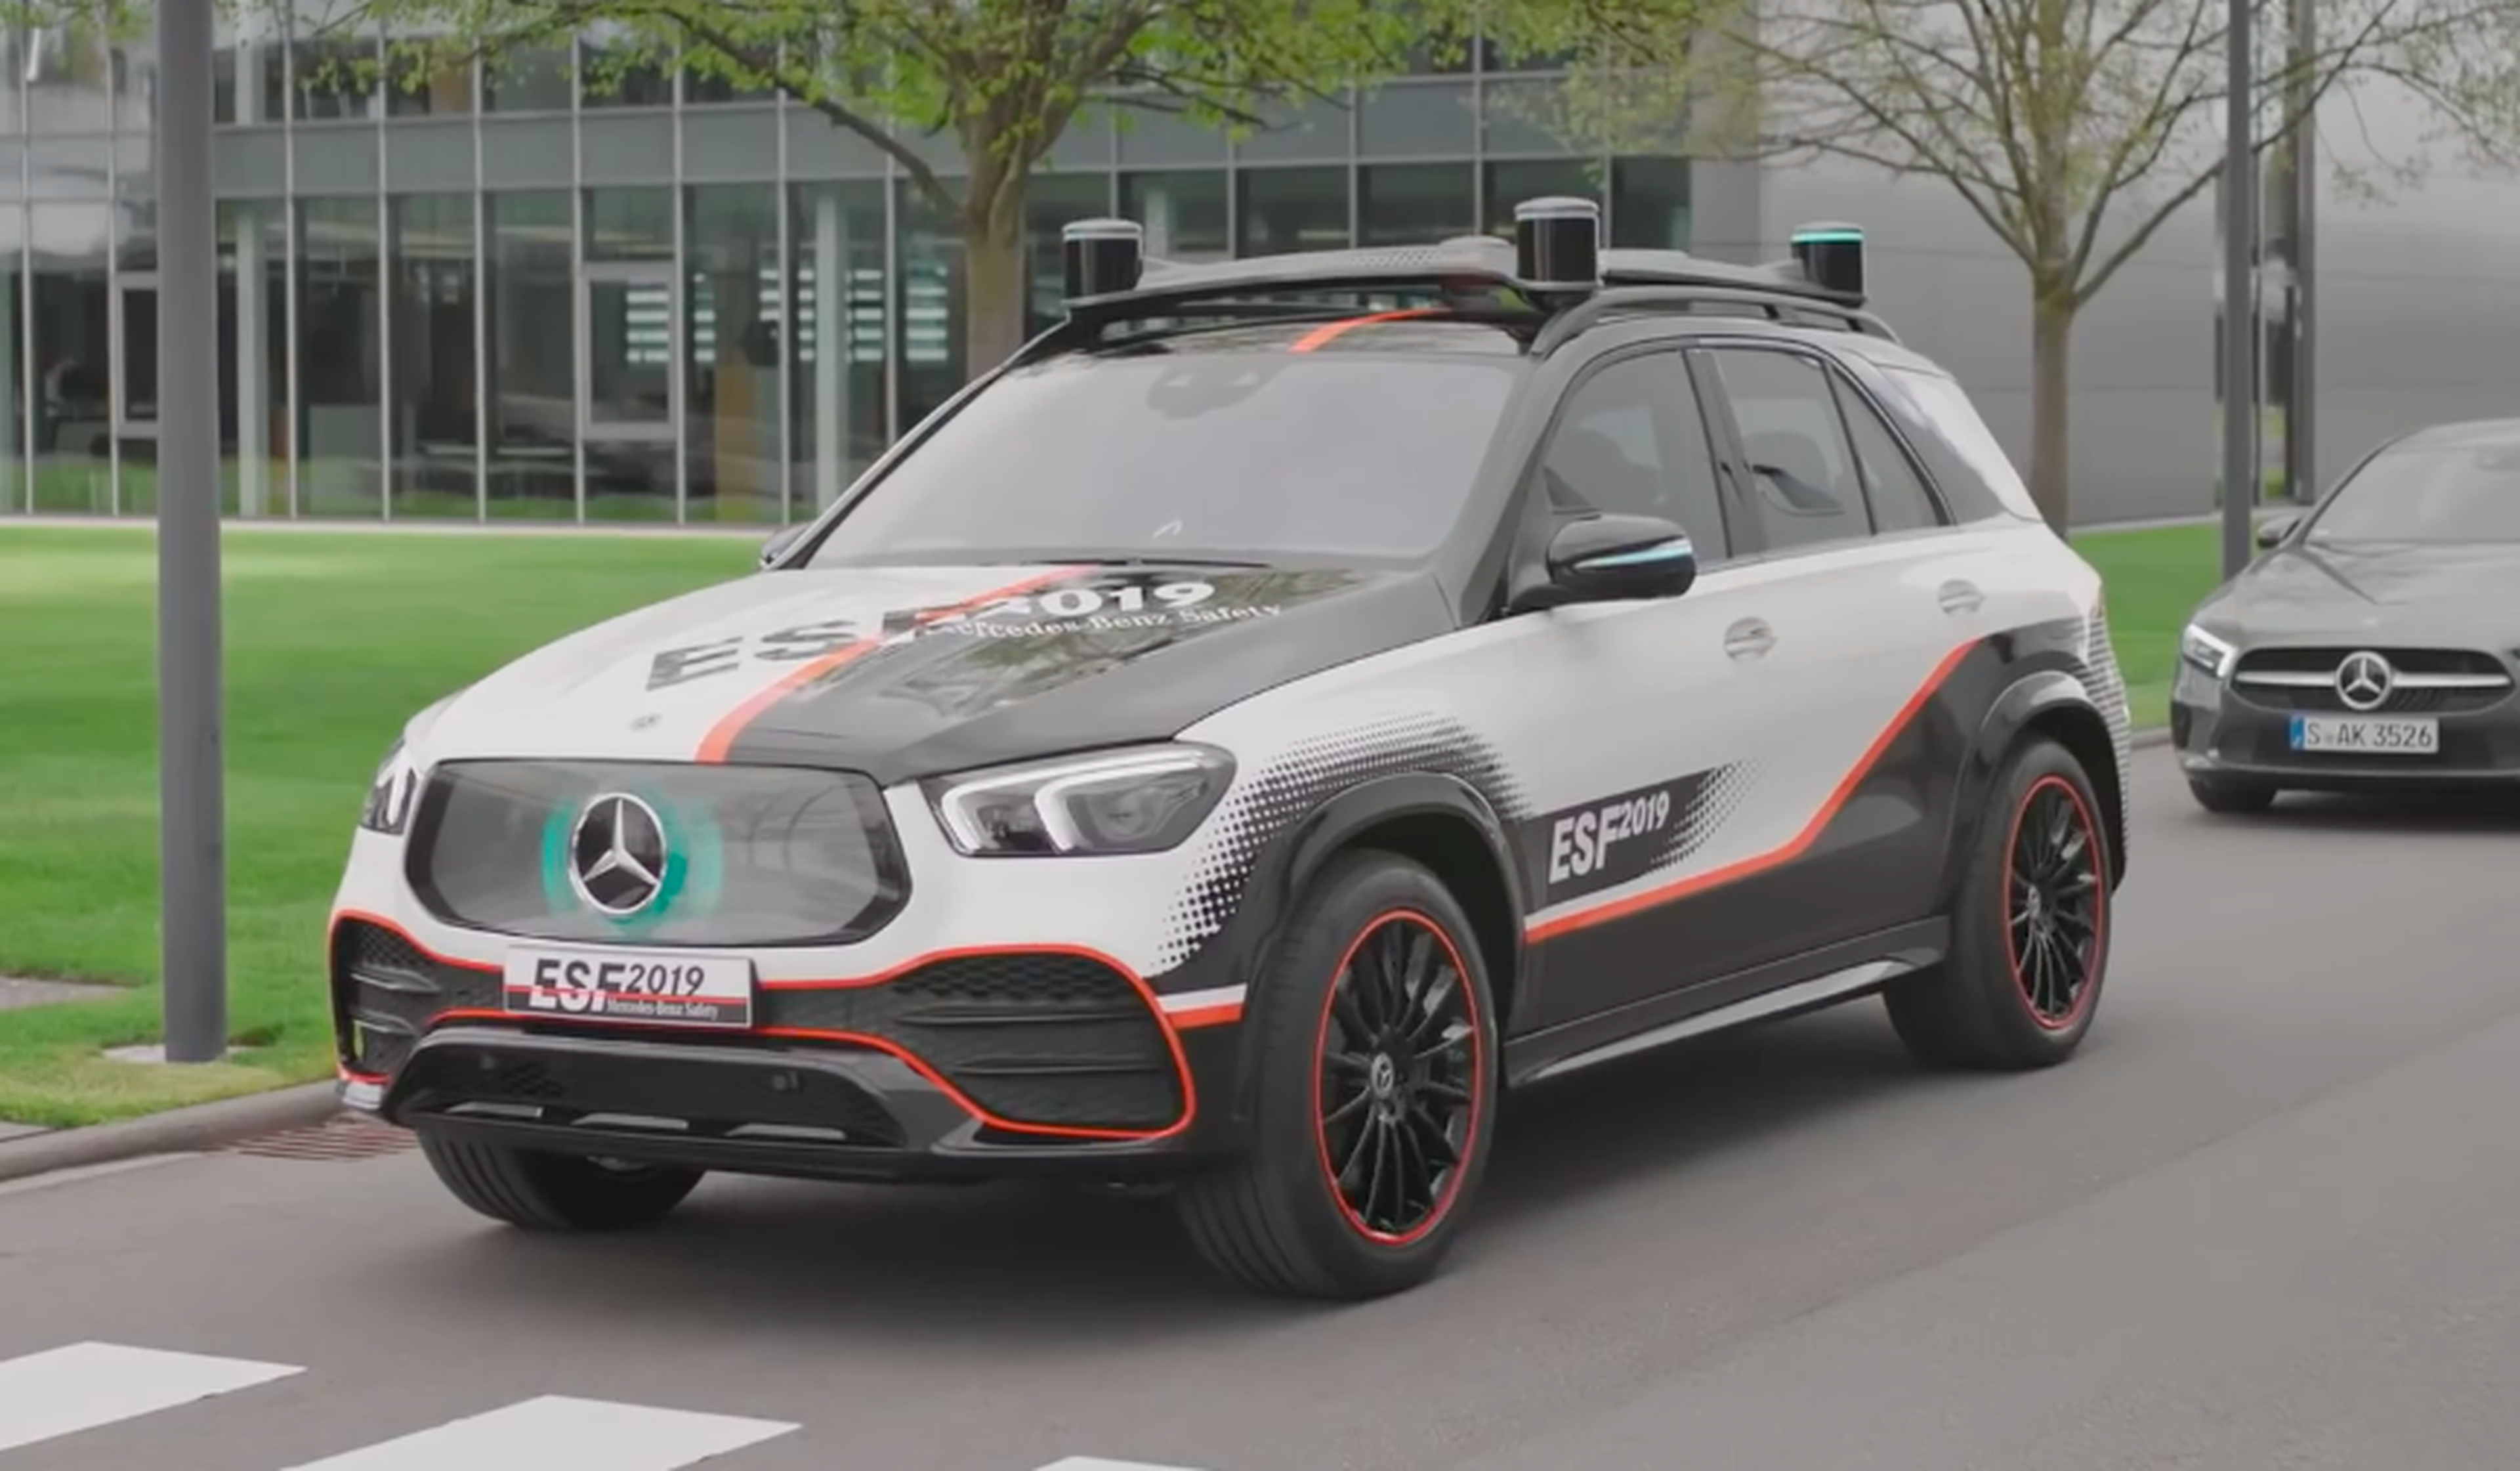 VÍDEO: Mercedes Experimental Safety Vehicle, ¿hasta dónde va a llegar la seguridad?